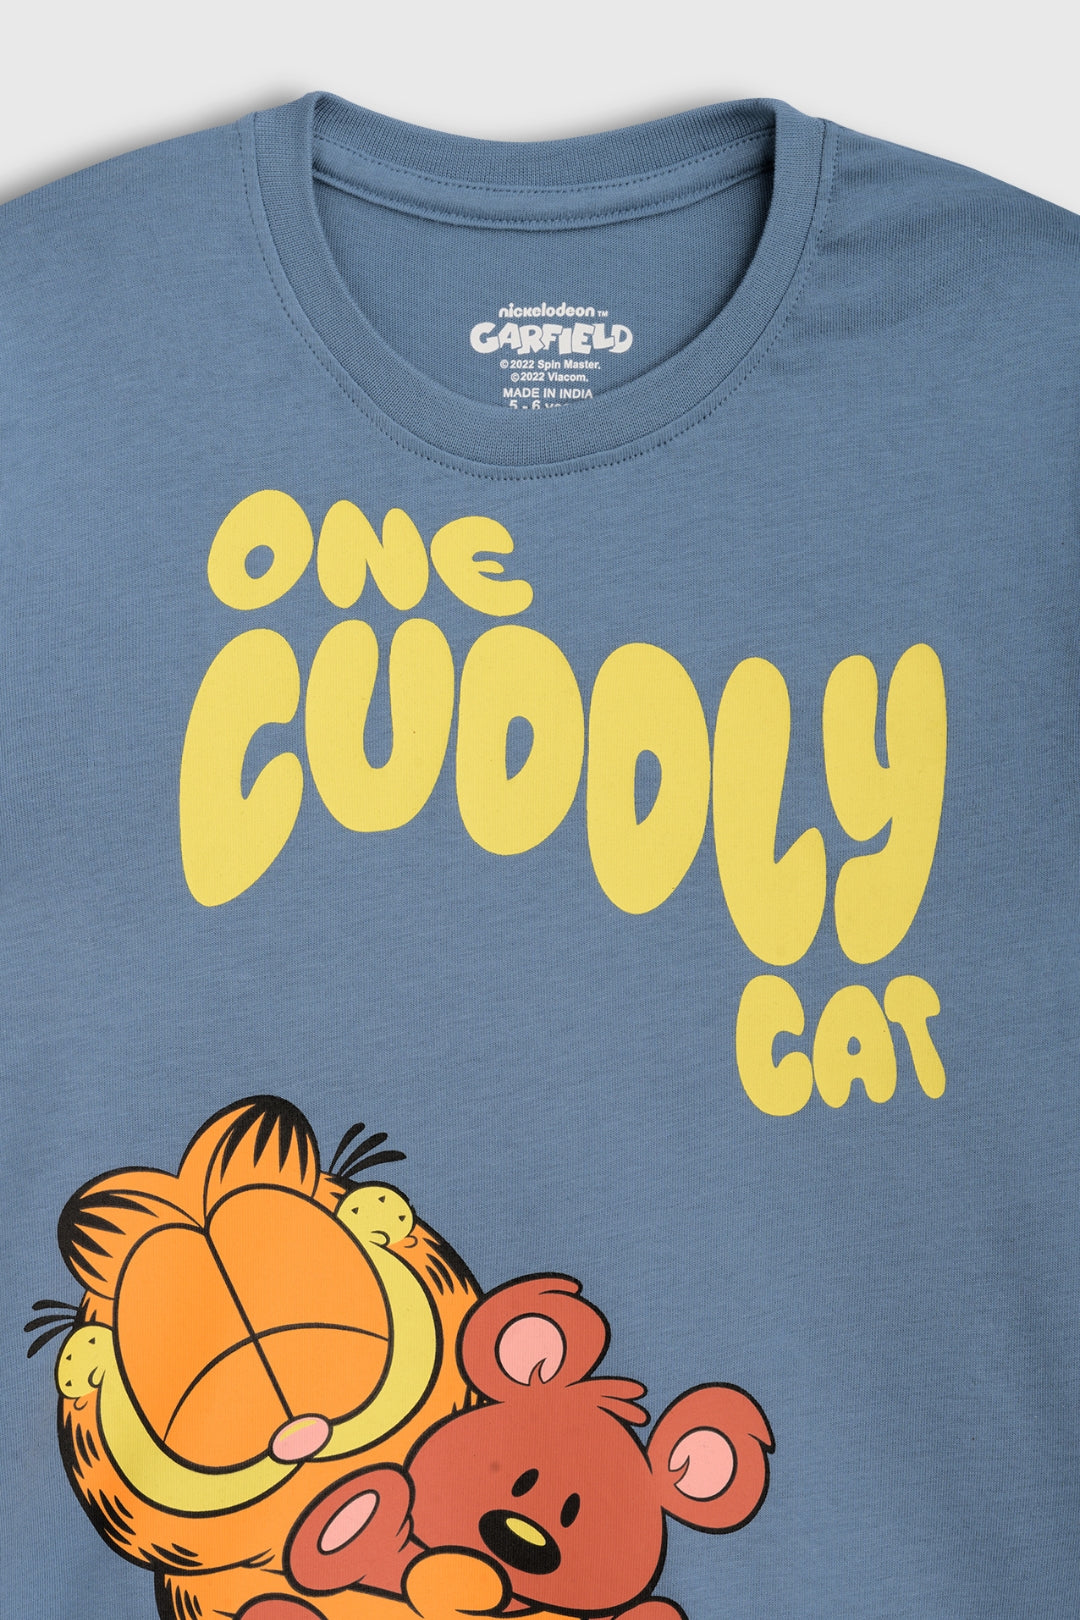 Garfield Cuddles Pajama Set